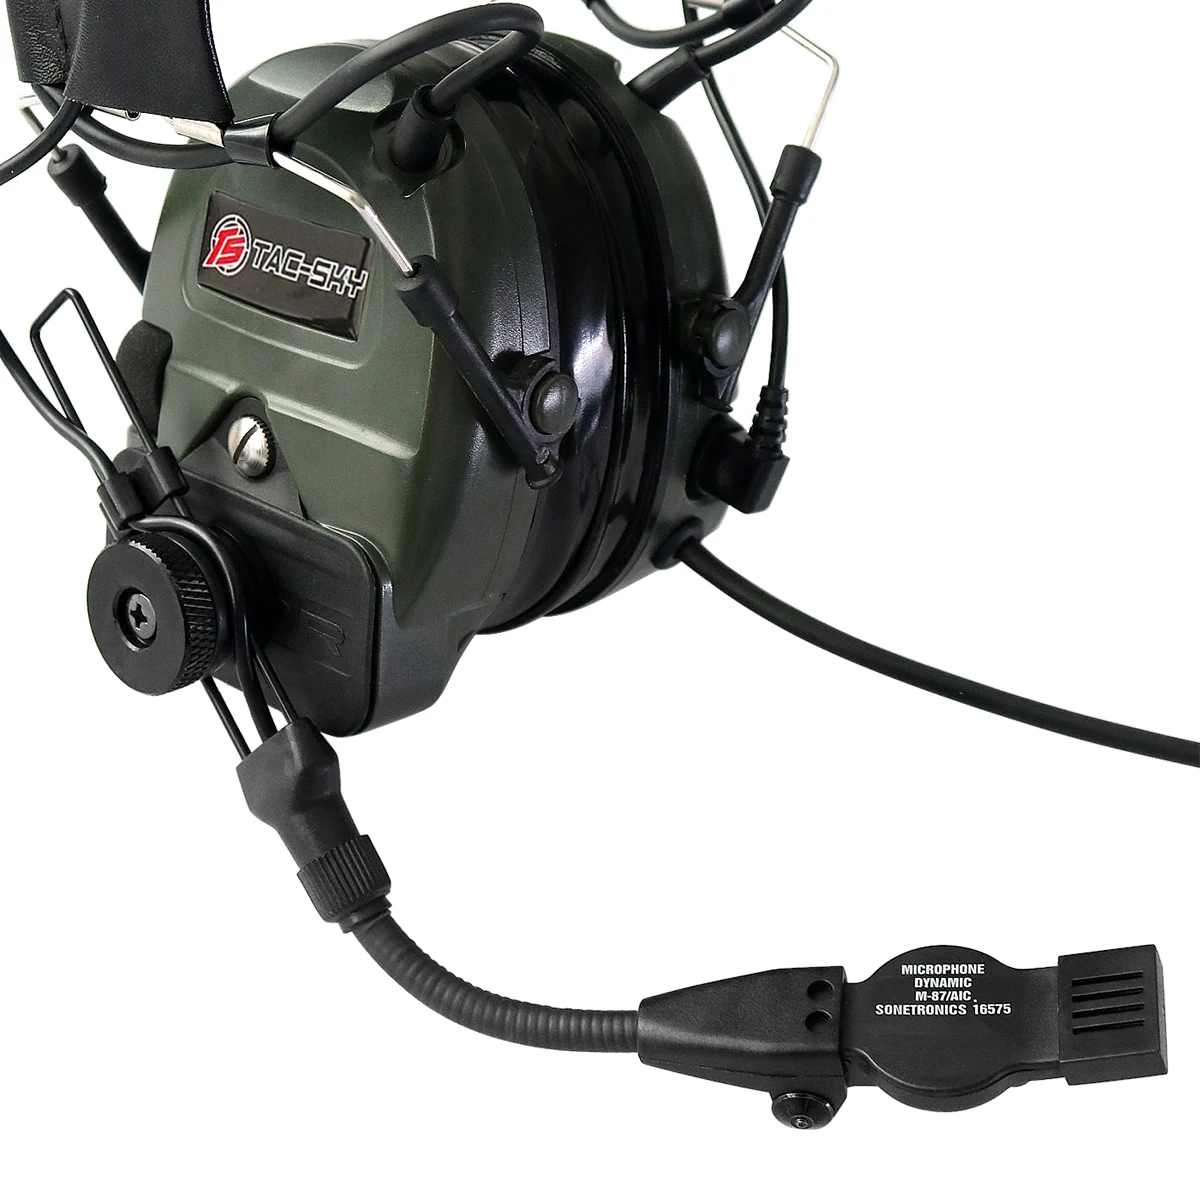 TAC-SKY TCI LIBERATOR 1 силиконовые наушники Военная Защита слуха шумоподавление звукосниматели Спорт на открытом воздухе тактическая гарнитура FG